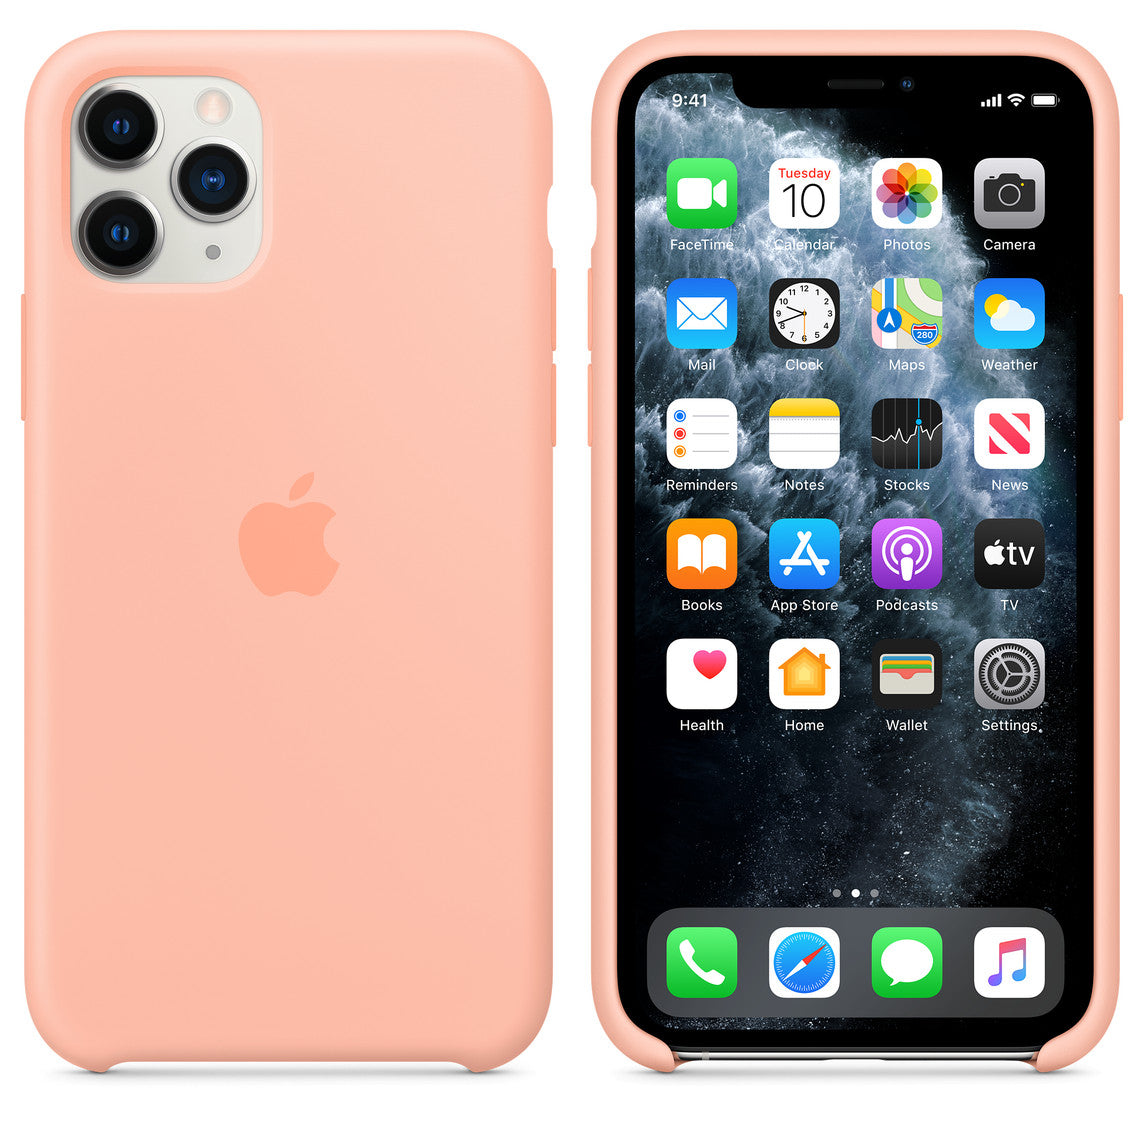 Apple iPhone 11 Pro Silikonhülle – Grapefruit – Original Neu